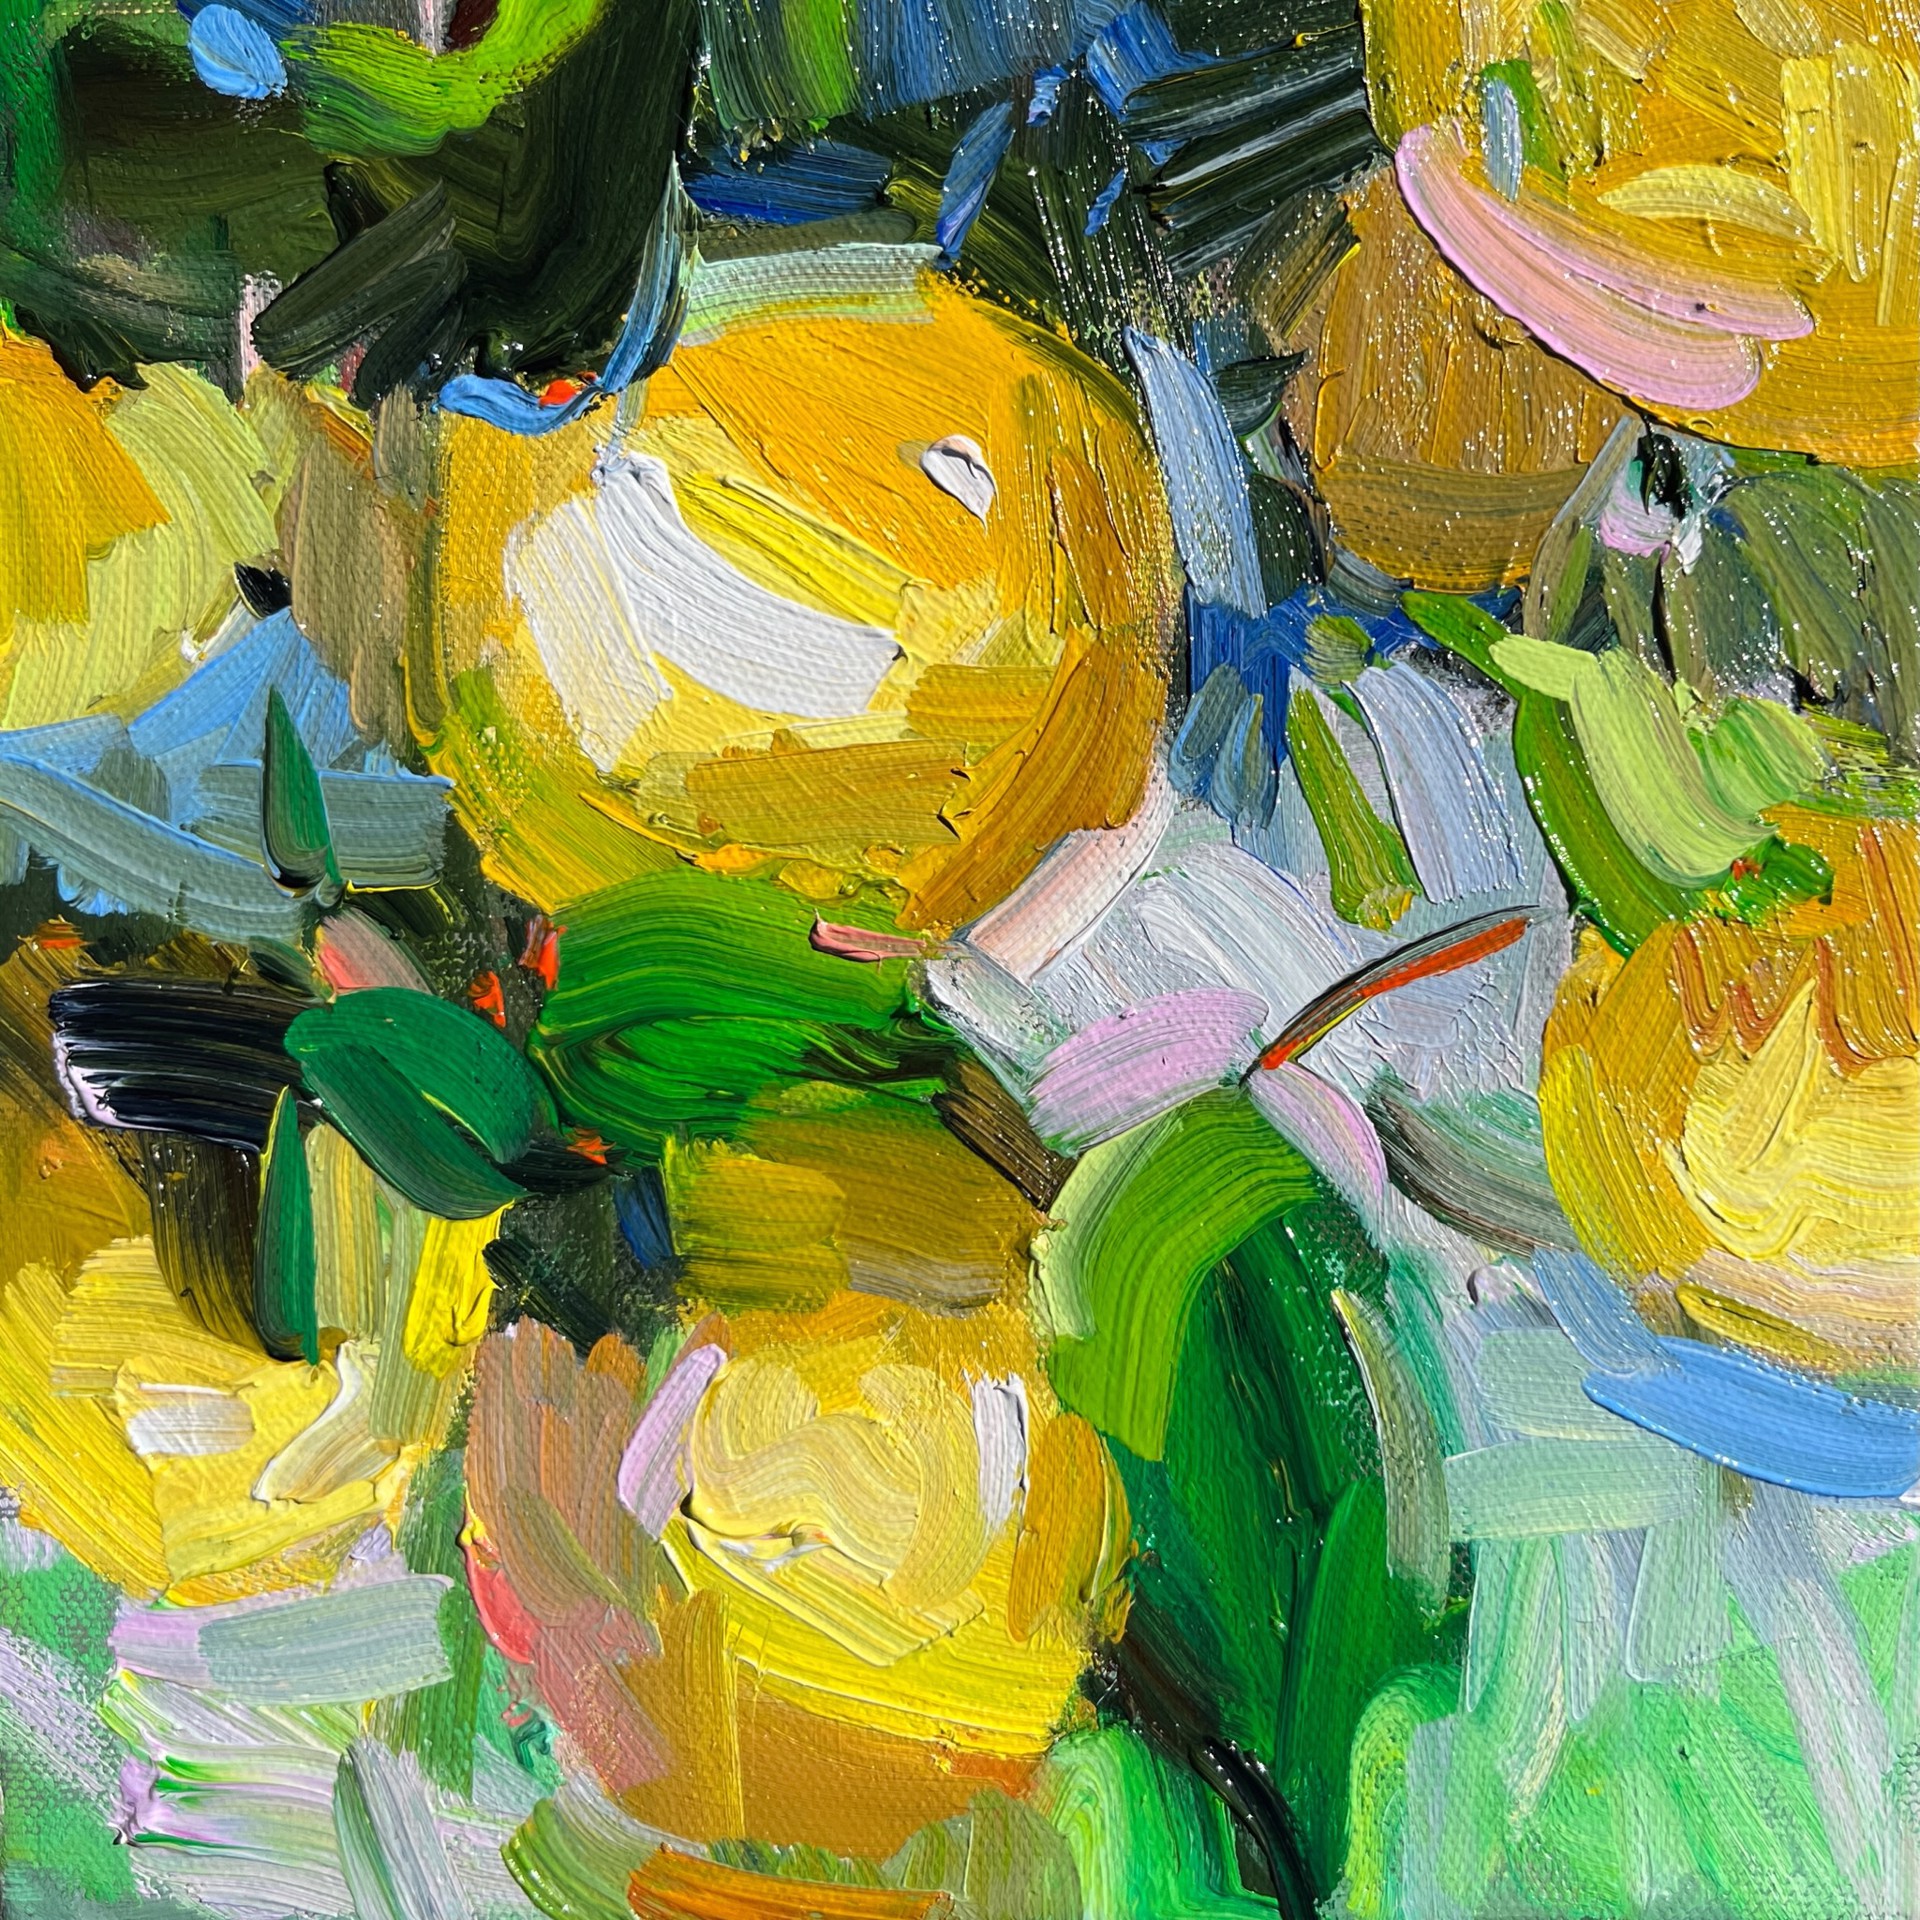 Lemon I by Marissa Vogl